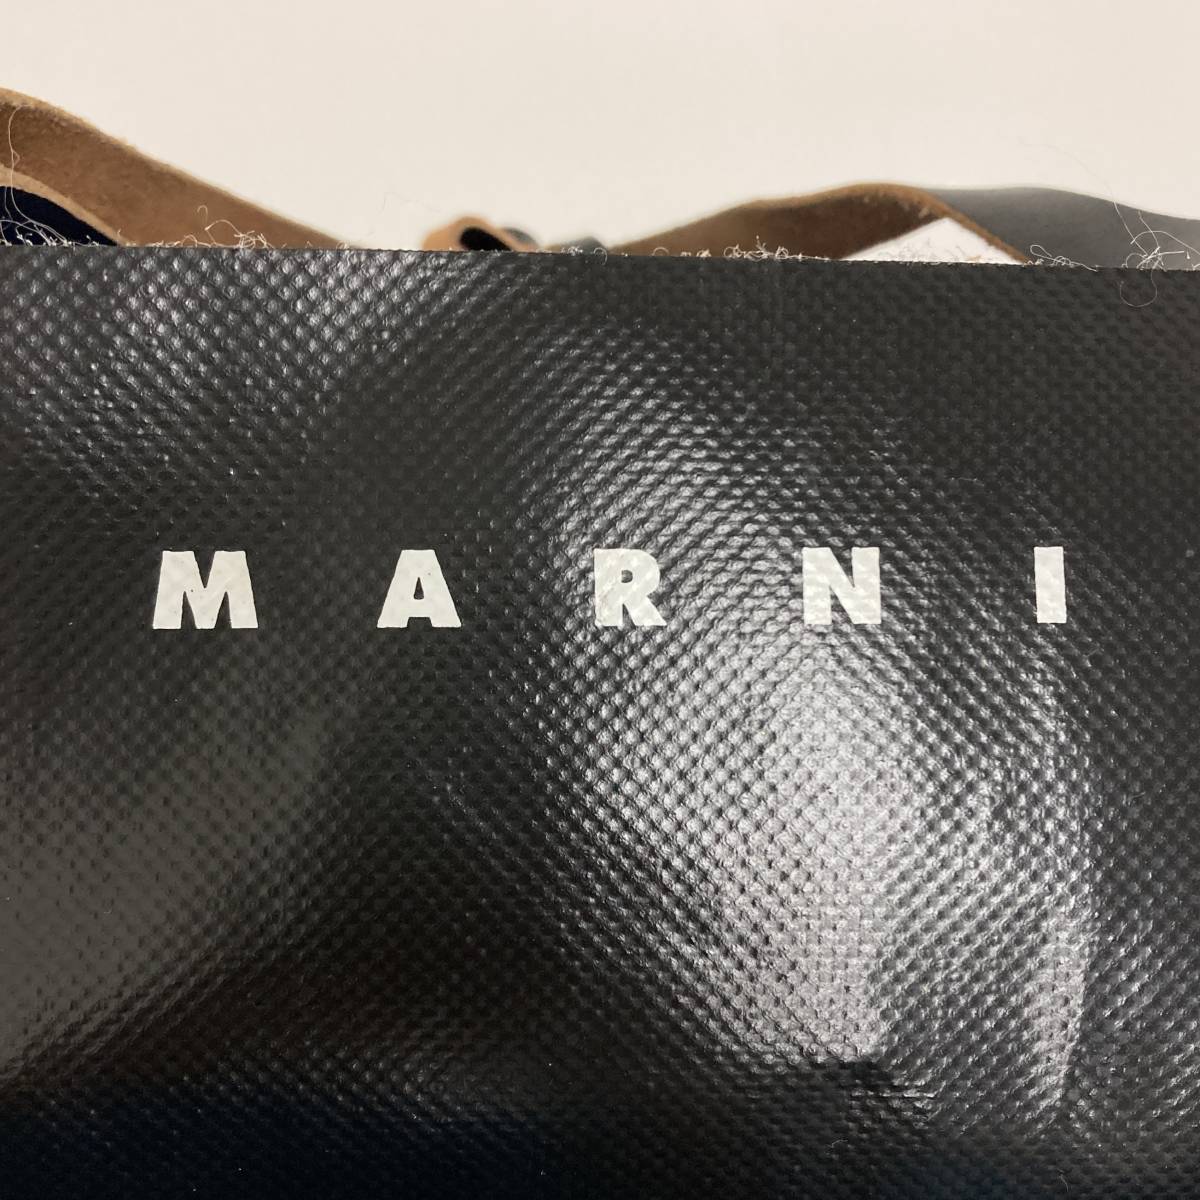 MARNI マルニ TRIBECA バイカラー ショッピングバッグ トートバッグ PVCレザー ブラック ブルー トライベッカ カバン 鞄 かばん 2090424_画像4